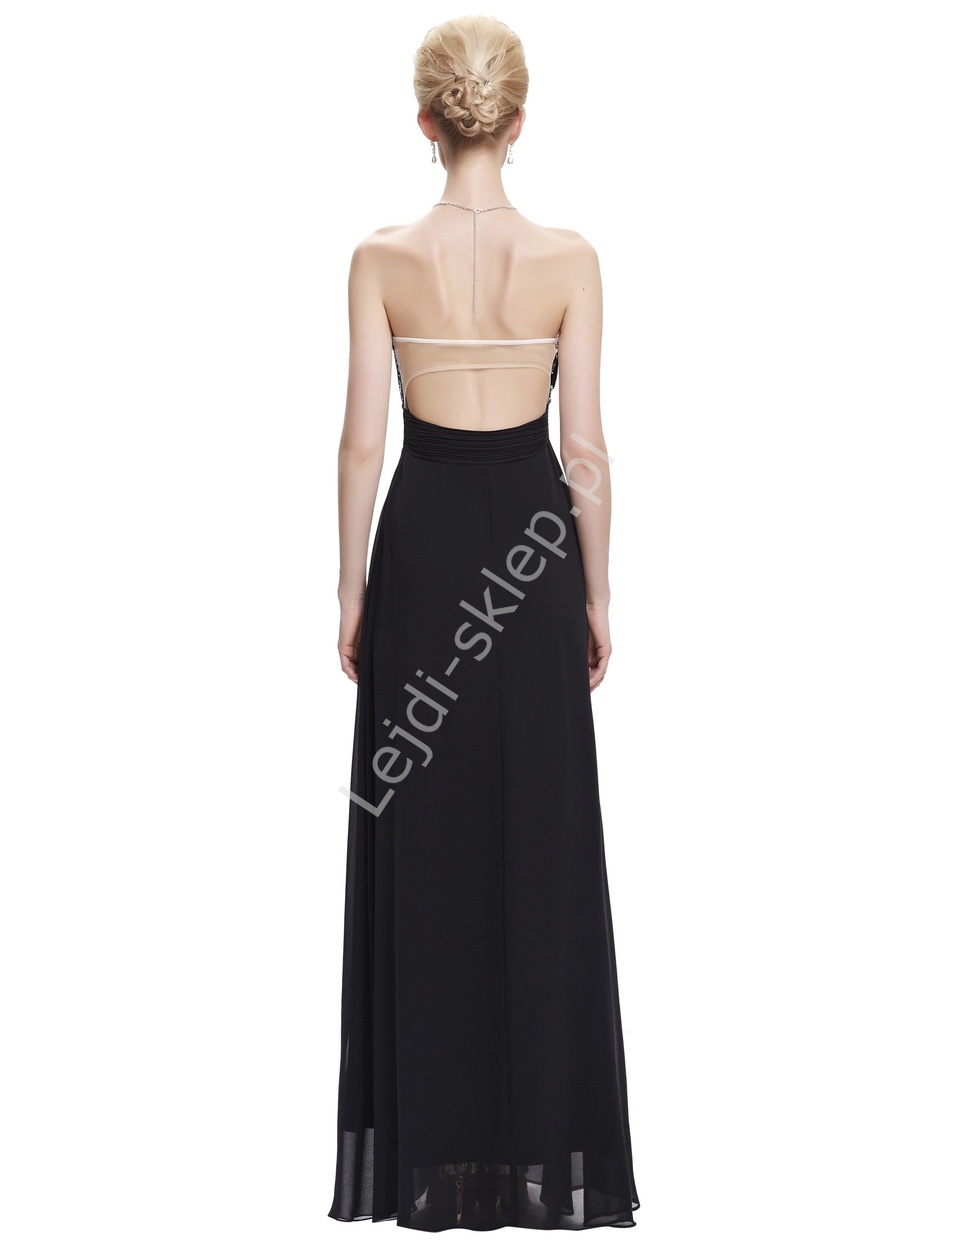 Szyfonowa skromna czarna suknia bez ramiączek, klasyczna z kryształkami